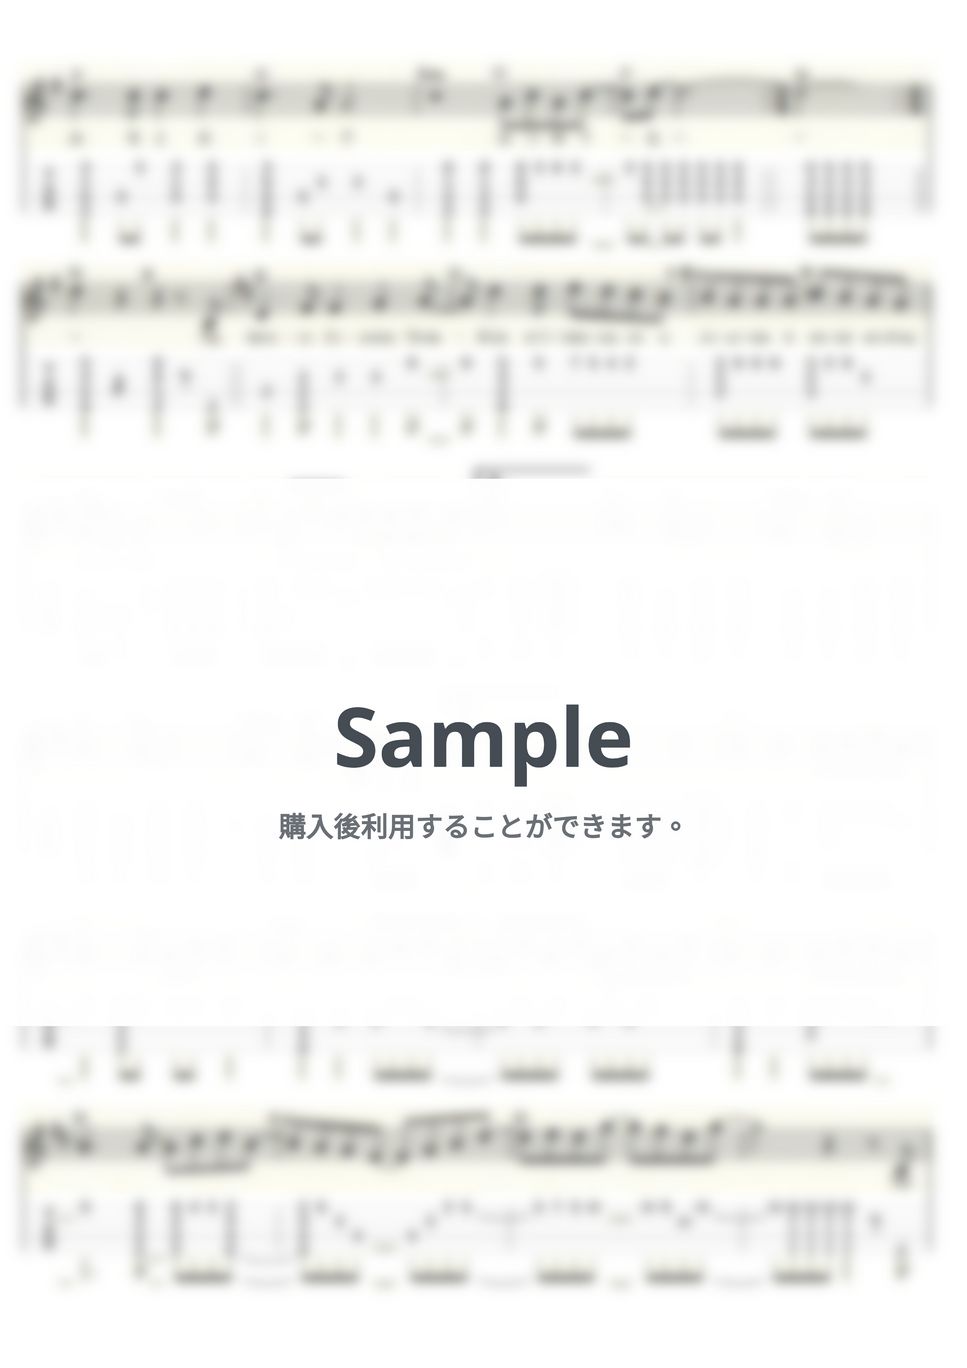 ゴダイゴ - 銀河鉄道999 (ｳｸﾚﾚｿﾛ / Low-G / 上級) by ukulelepapa